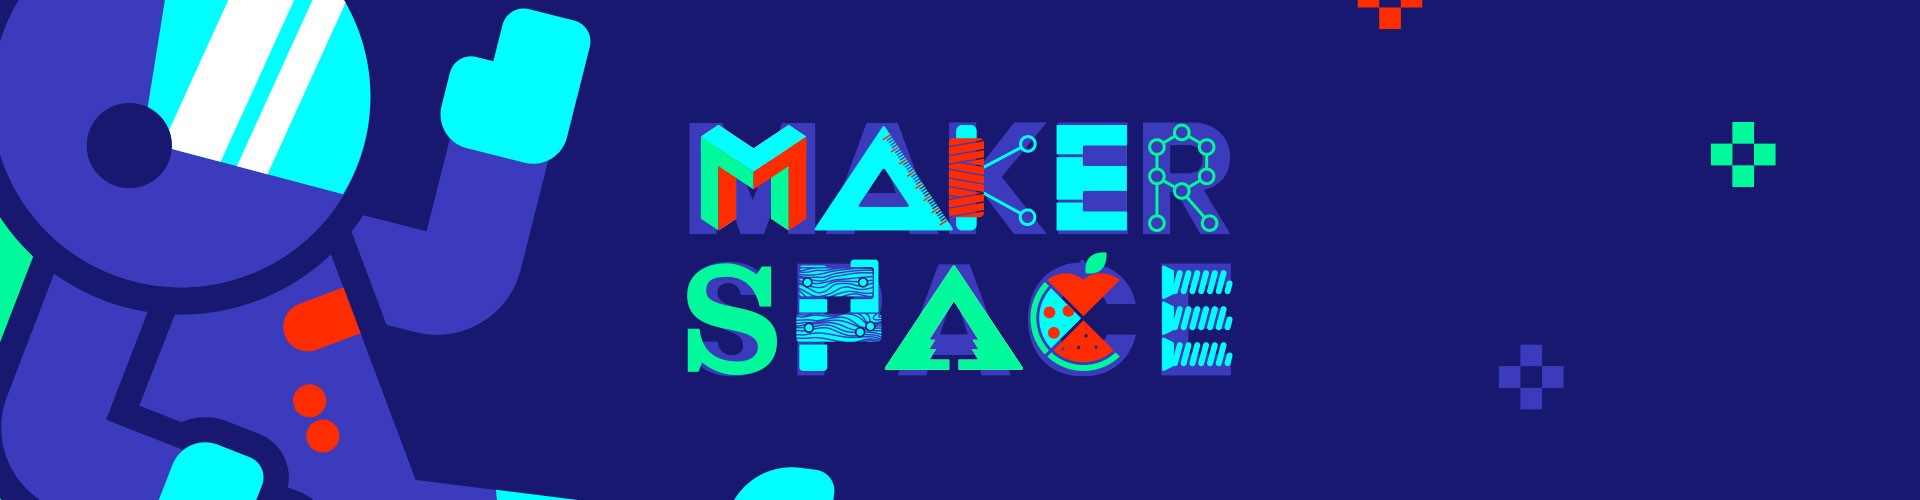 god kreativ efterskole makerspace diy 3d print droner lasercutter